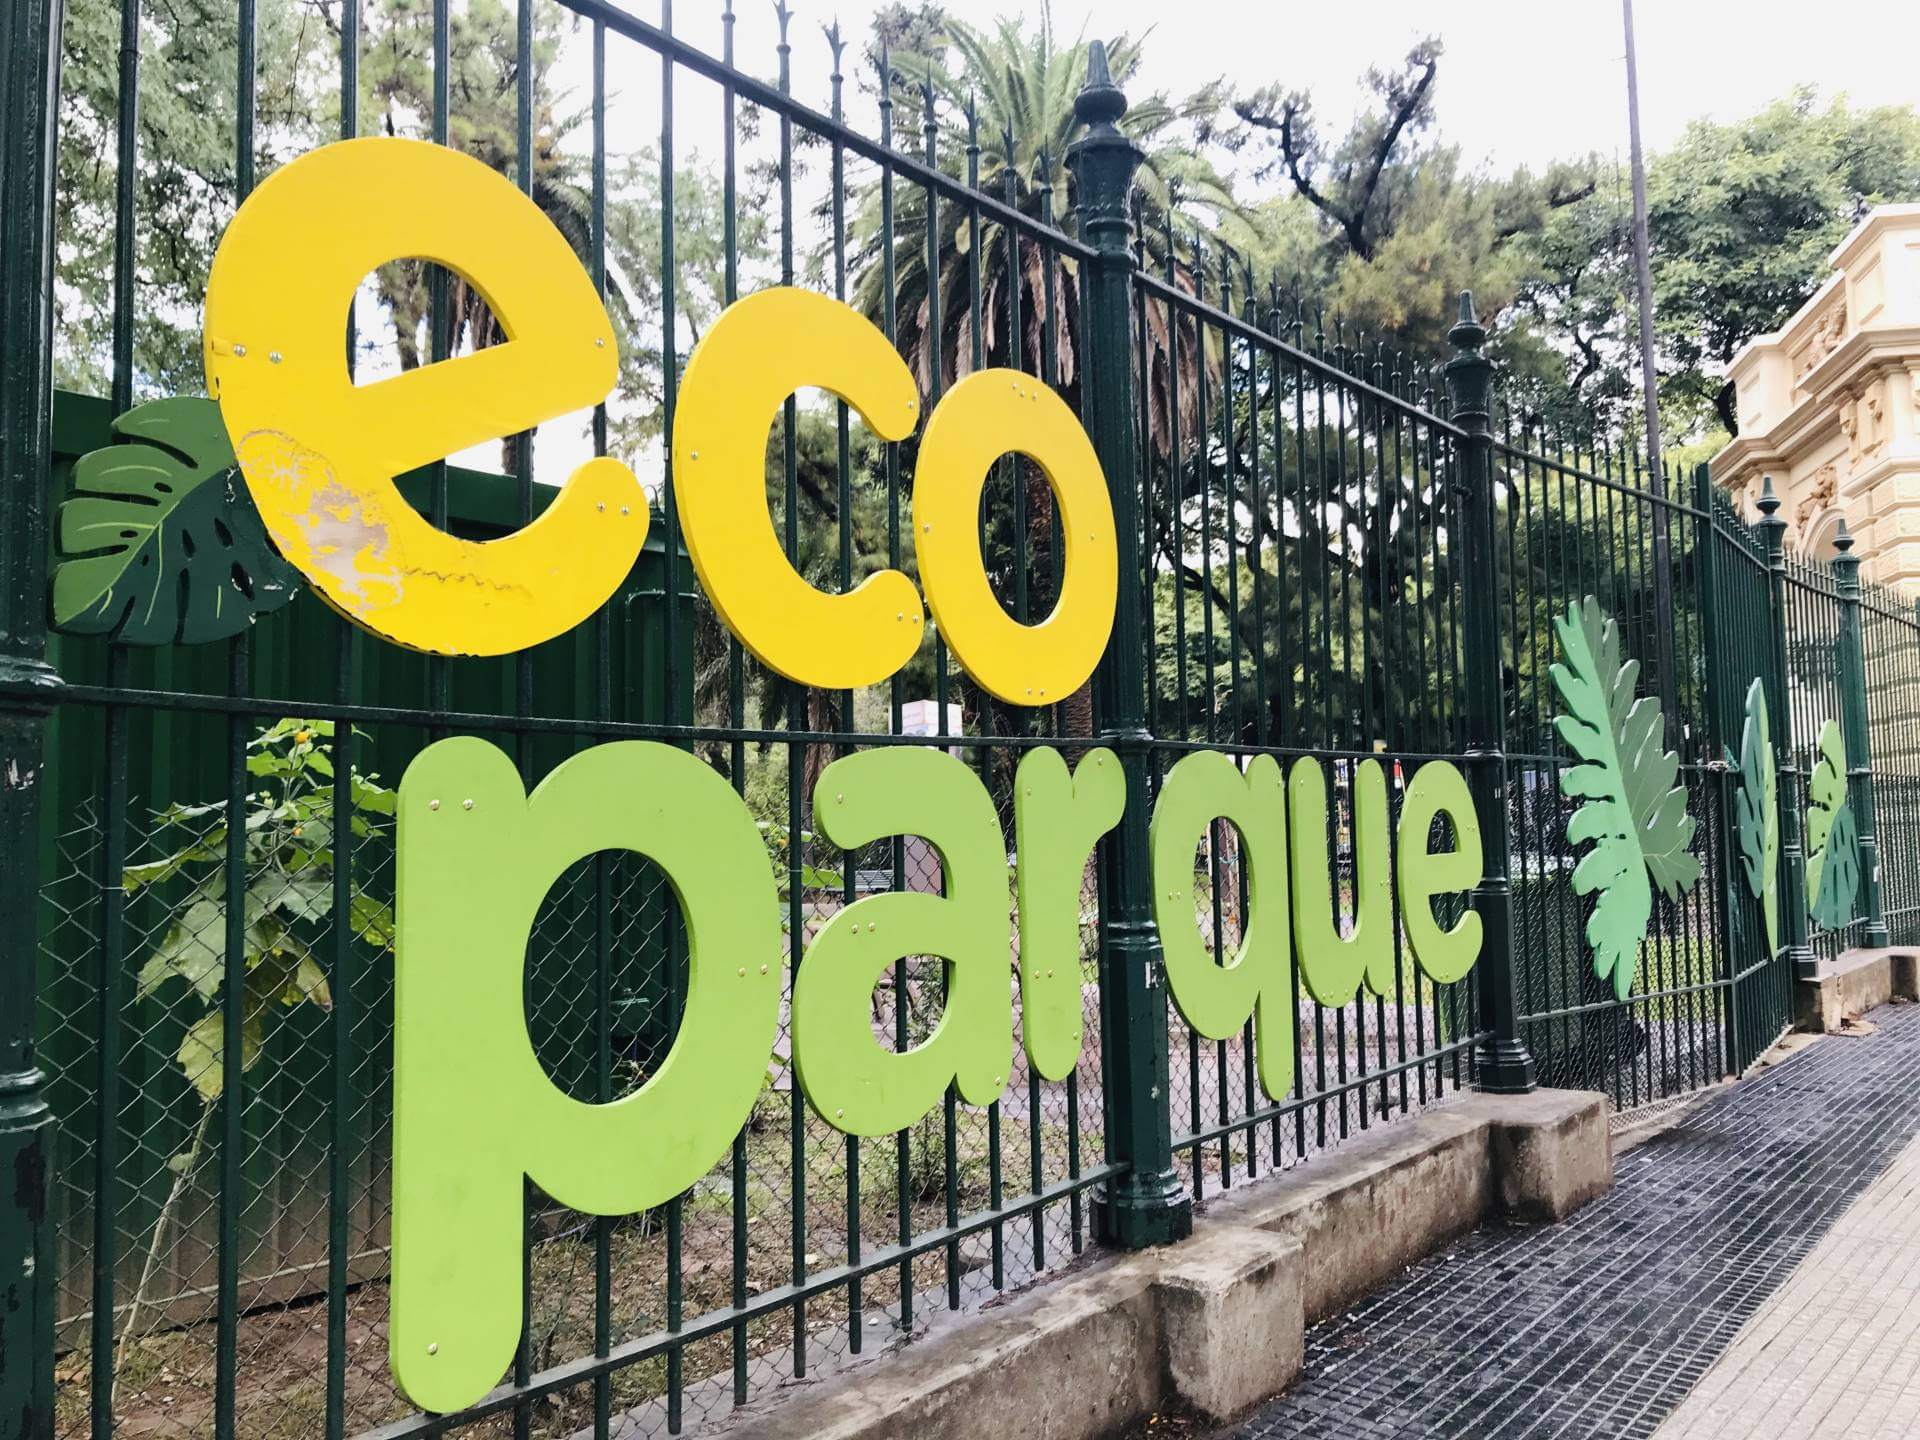 Ecoparque Buenos Aires